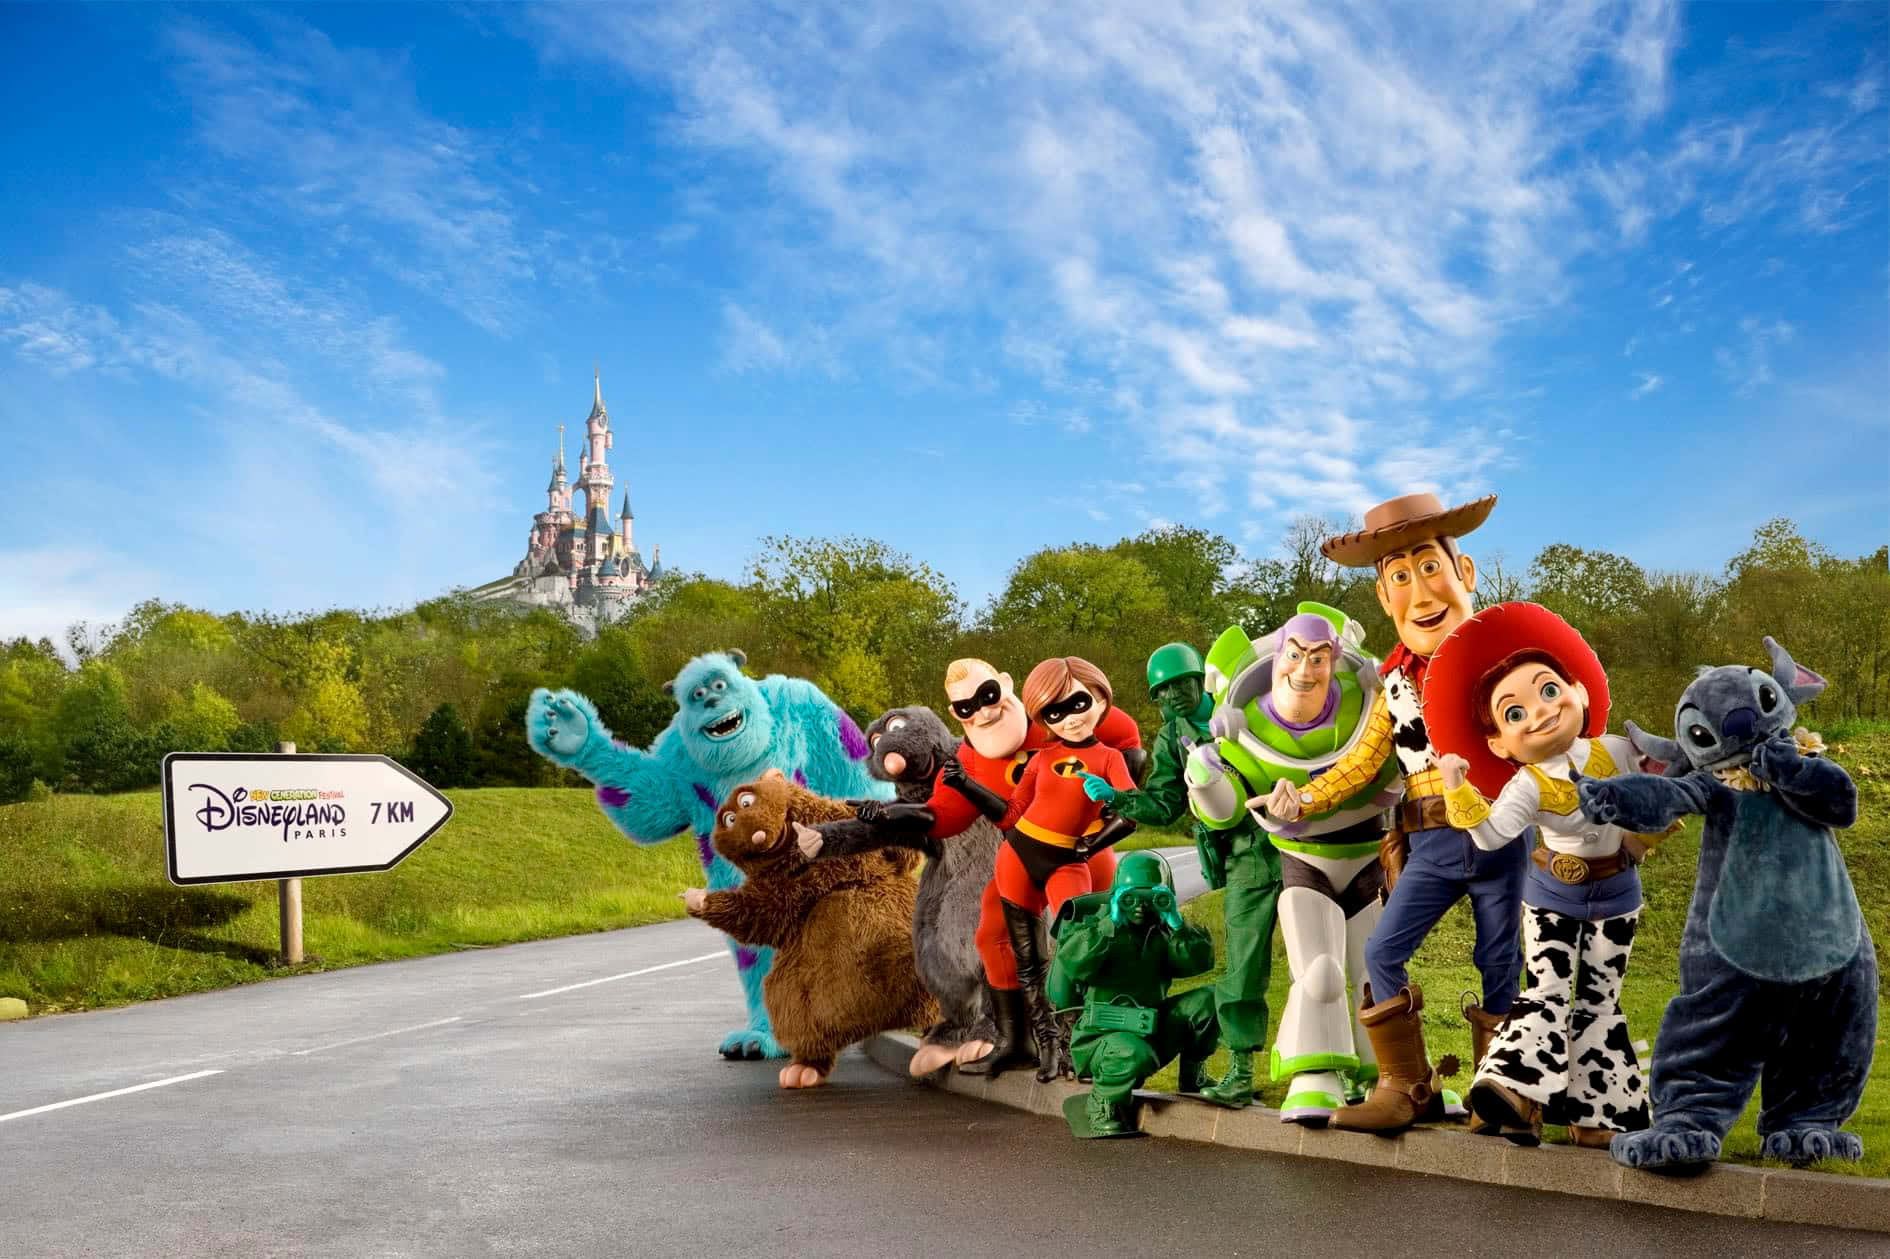 Personagensda Disney Convidam Você A Visitar A Disneyland Paris. Papel de Parede